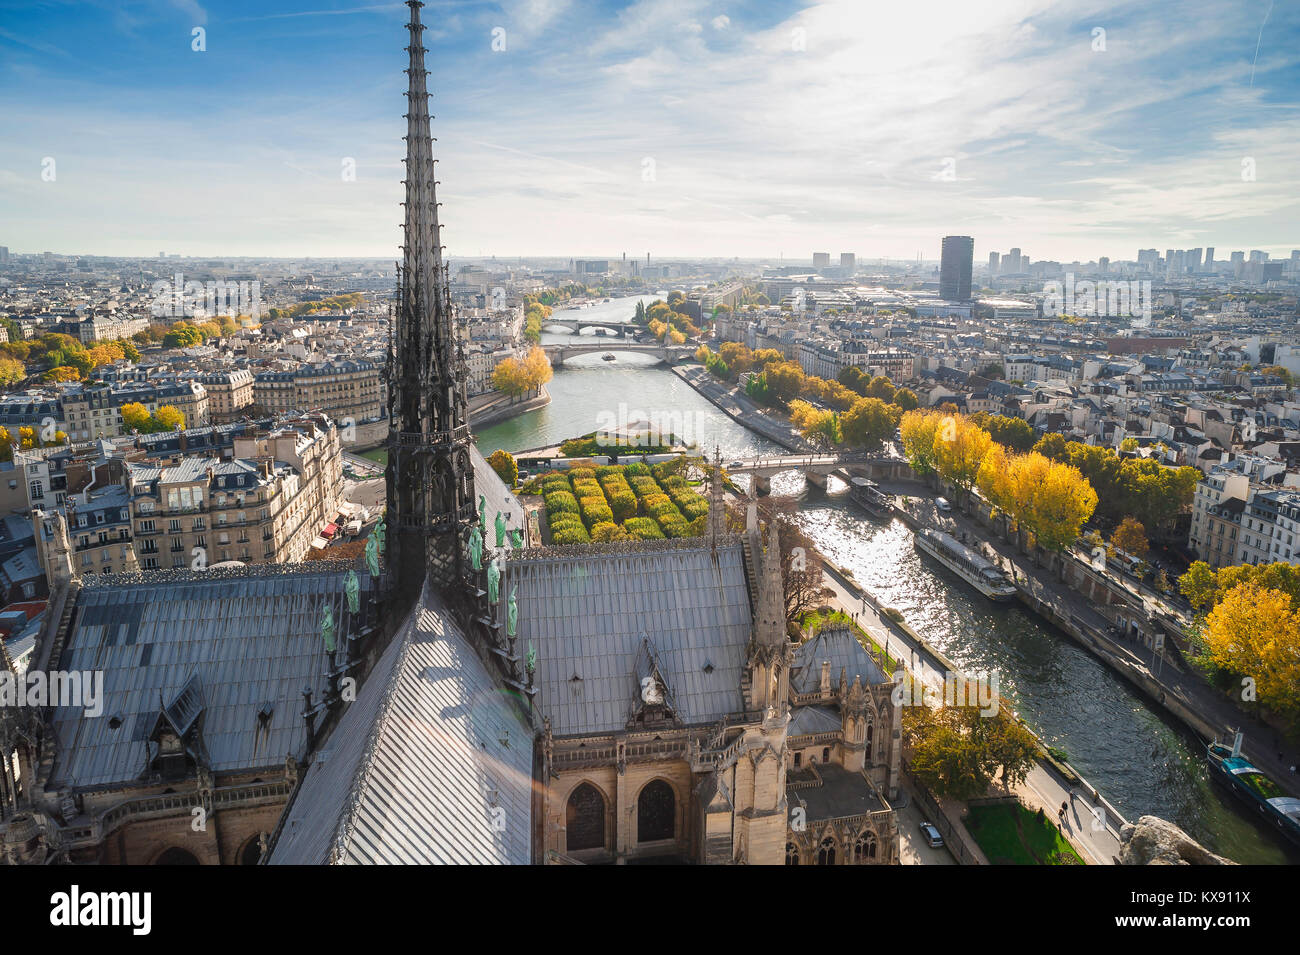 El paisaje urbano de París, vista aérea de alto sobre el techo de la catedral de Notre Dame, mirando hacia el este de París, en una mañana de otoño, Francia. Foto de stock